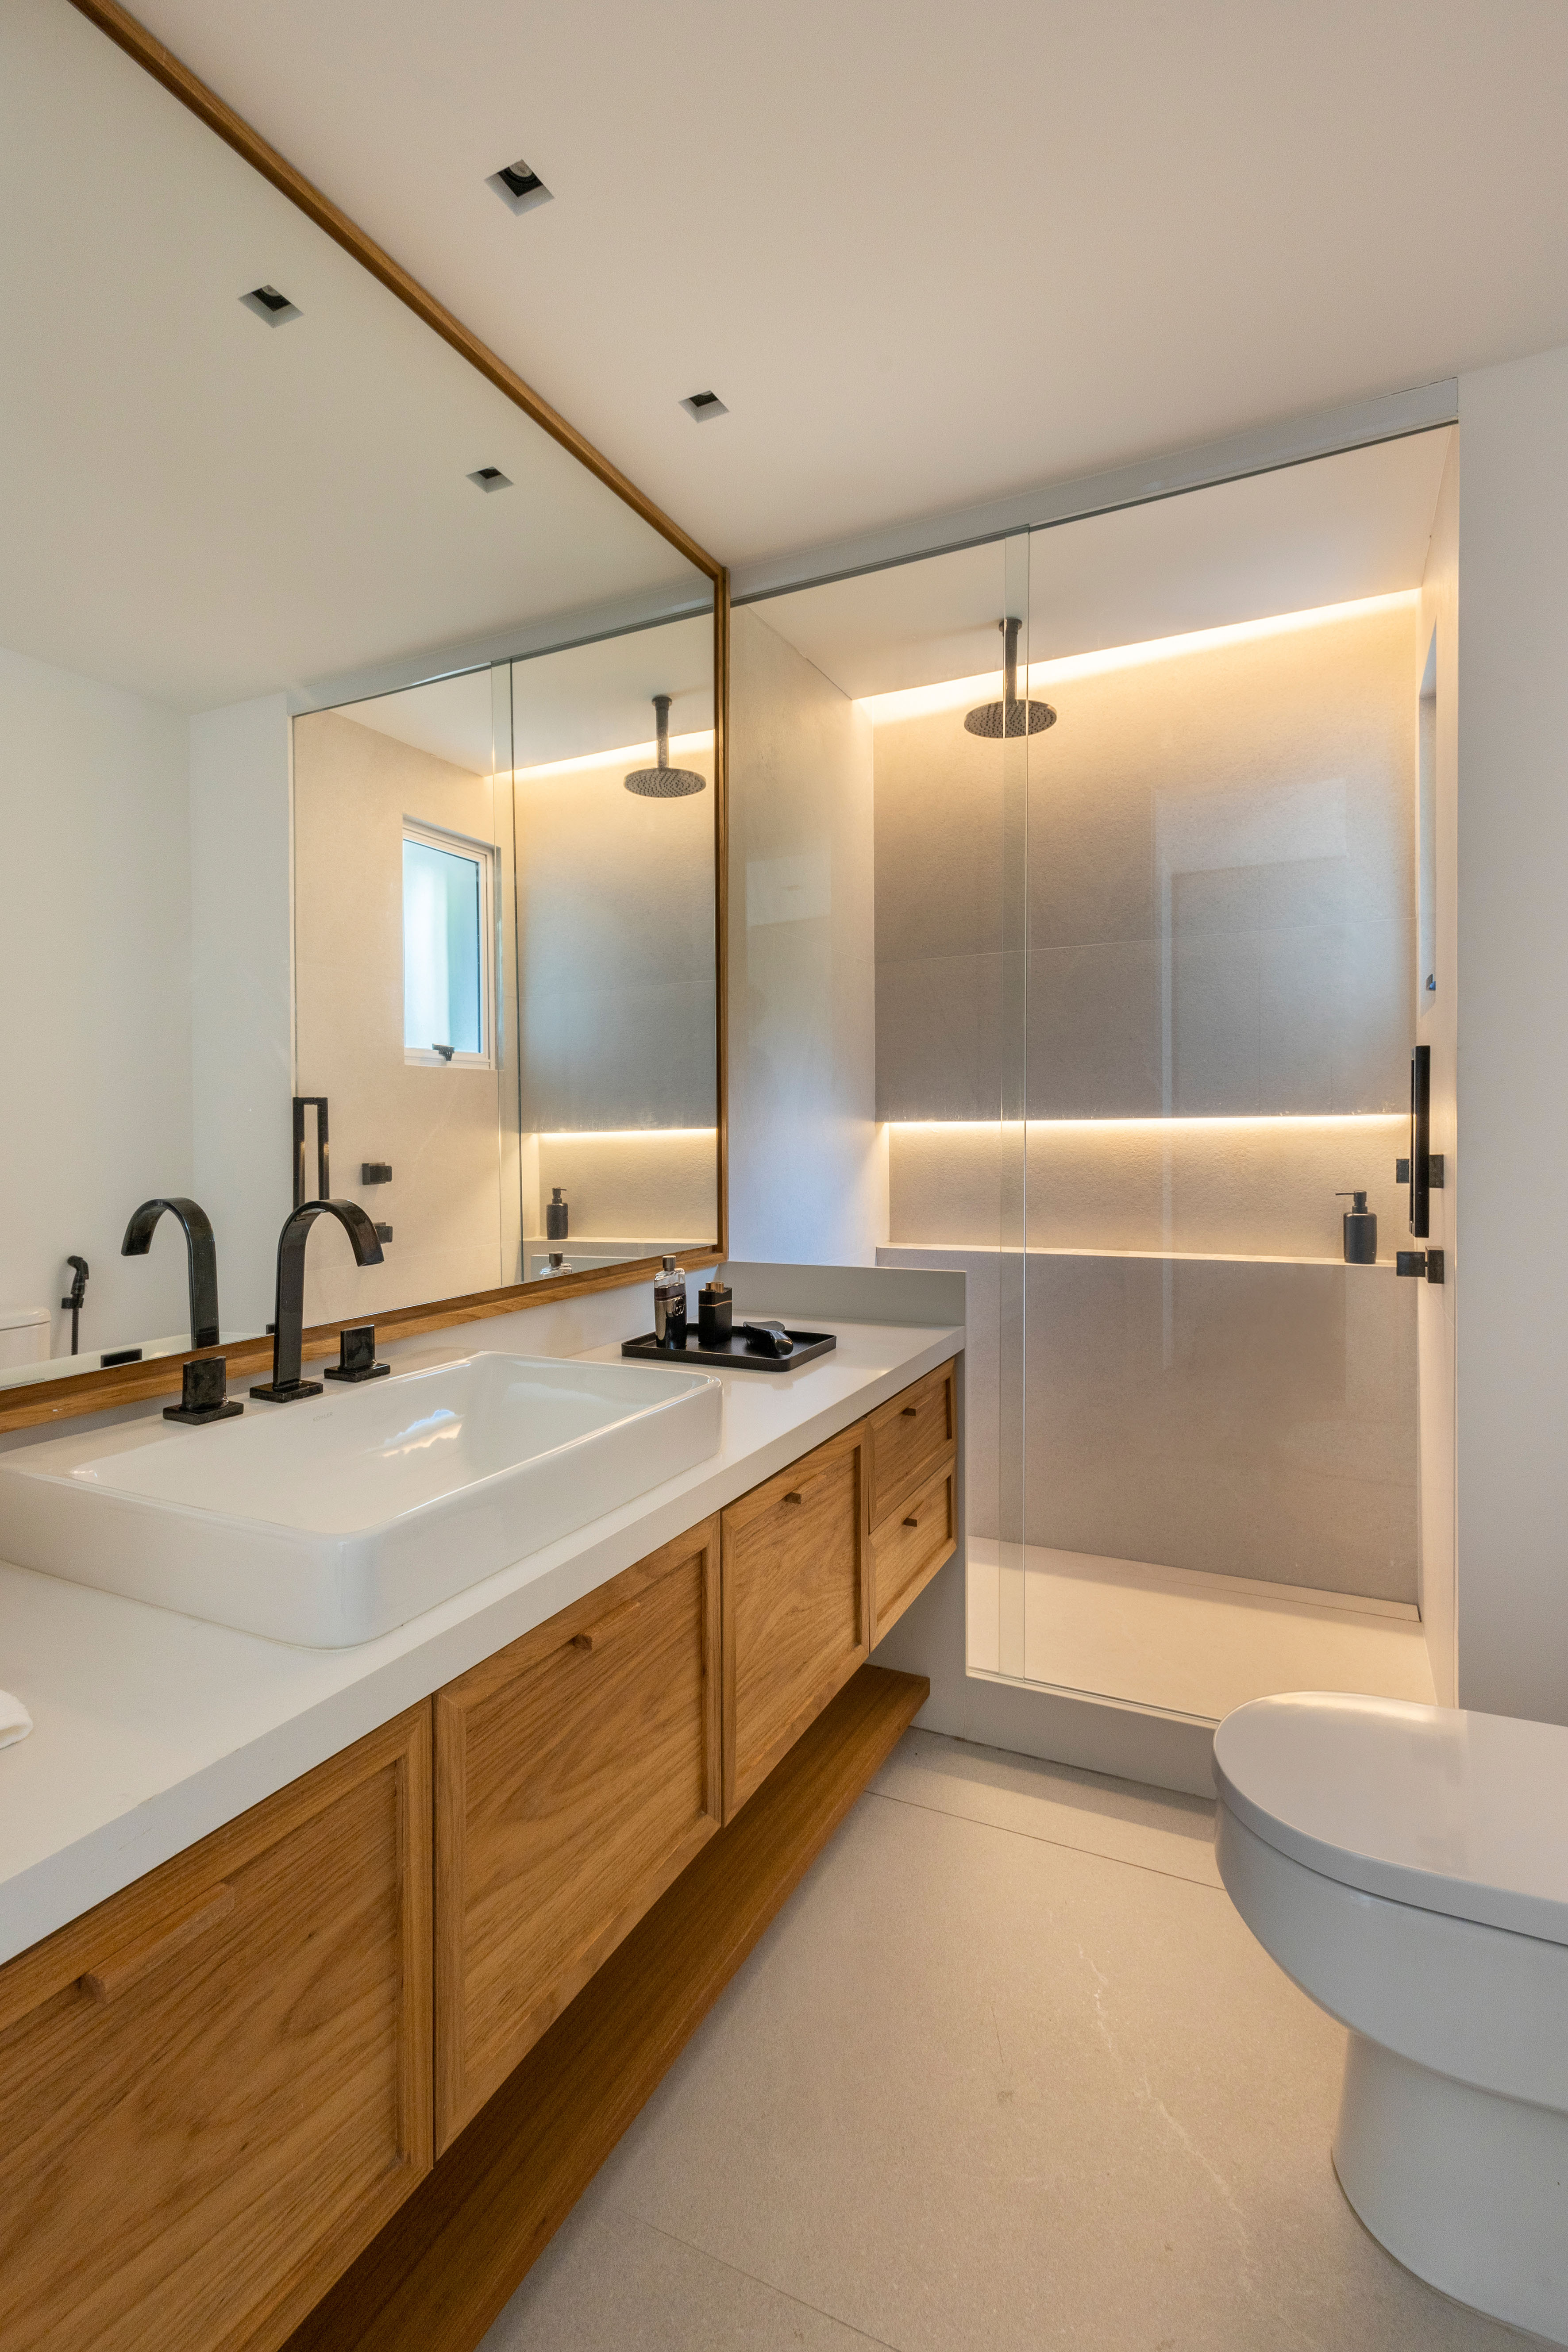 Projeto de Escala Arquitetura. Na foto, banheiro com bancada branca, box iluminado com nichos.